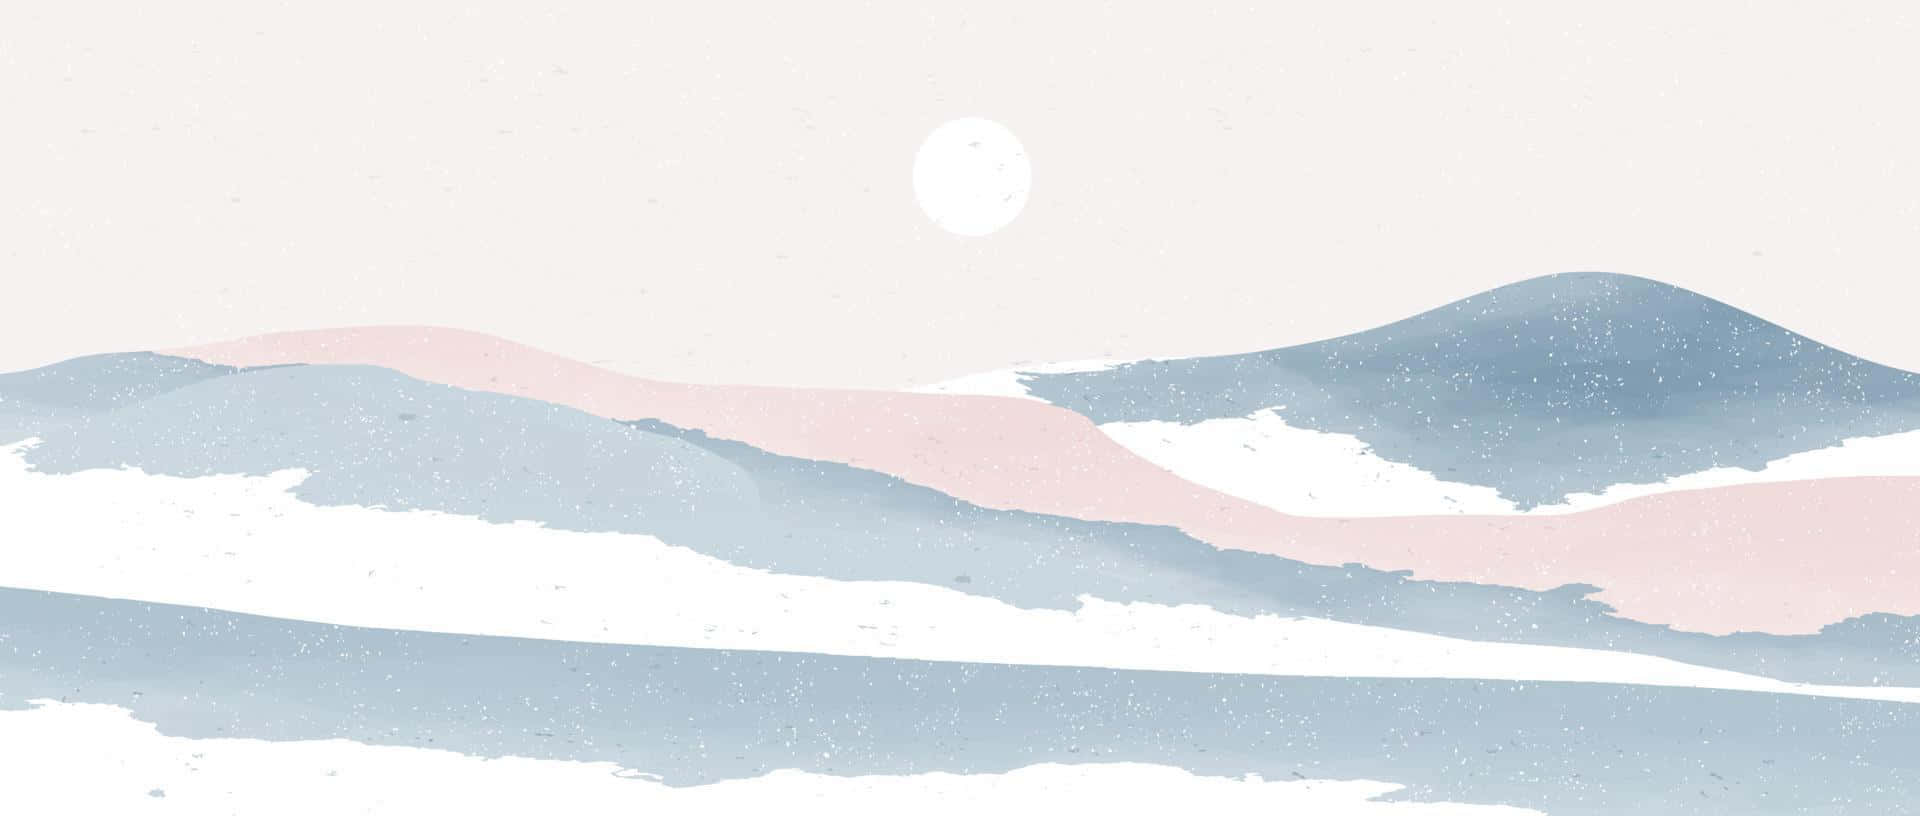 Minimalist Winter Mountain Landscape Wallpaper